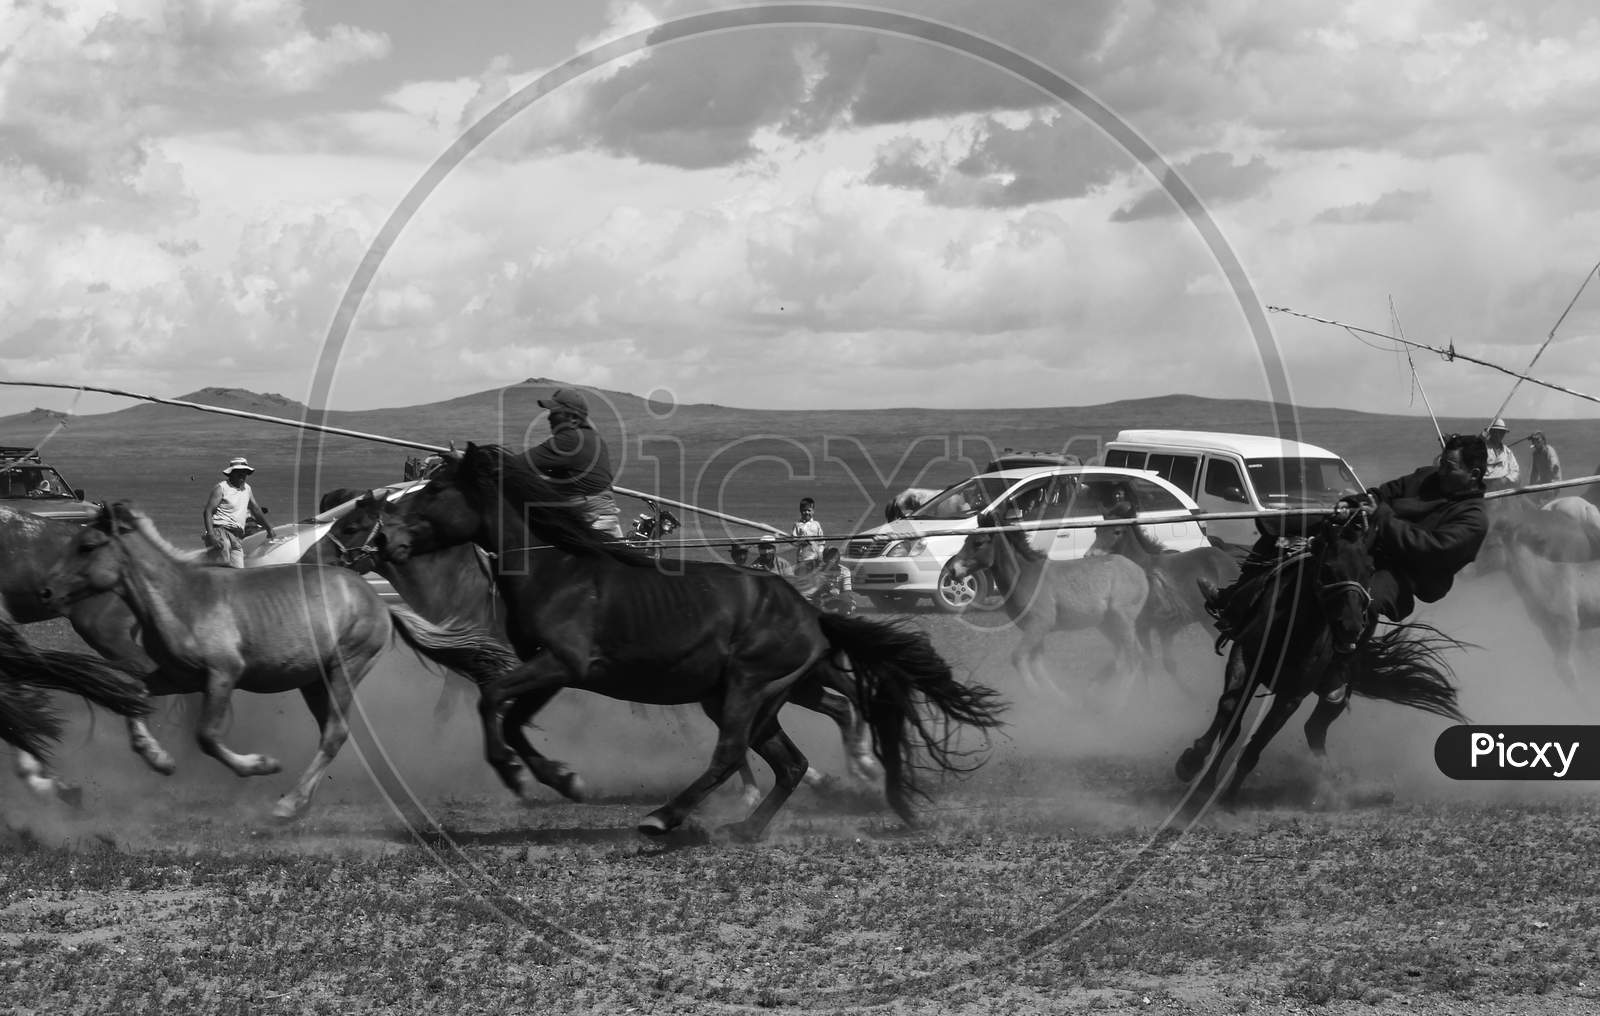 Mongolia horse man